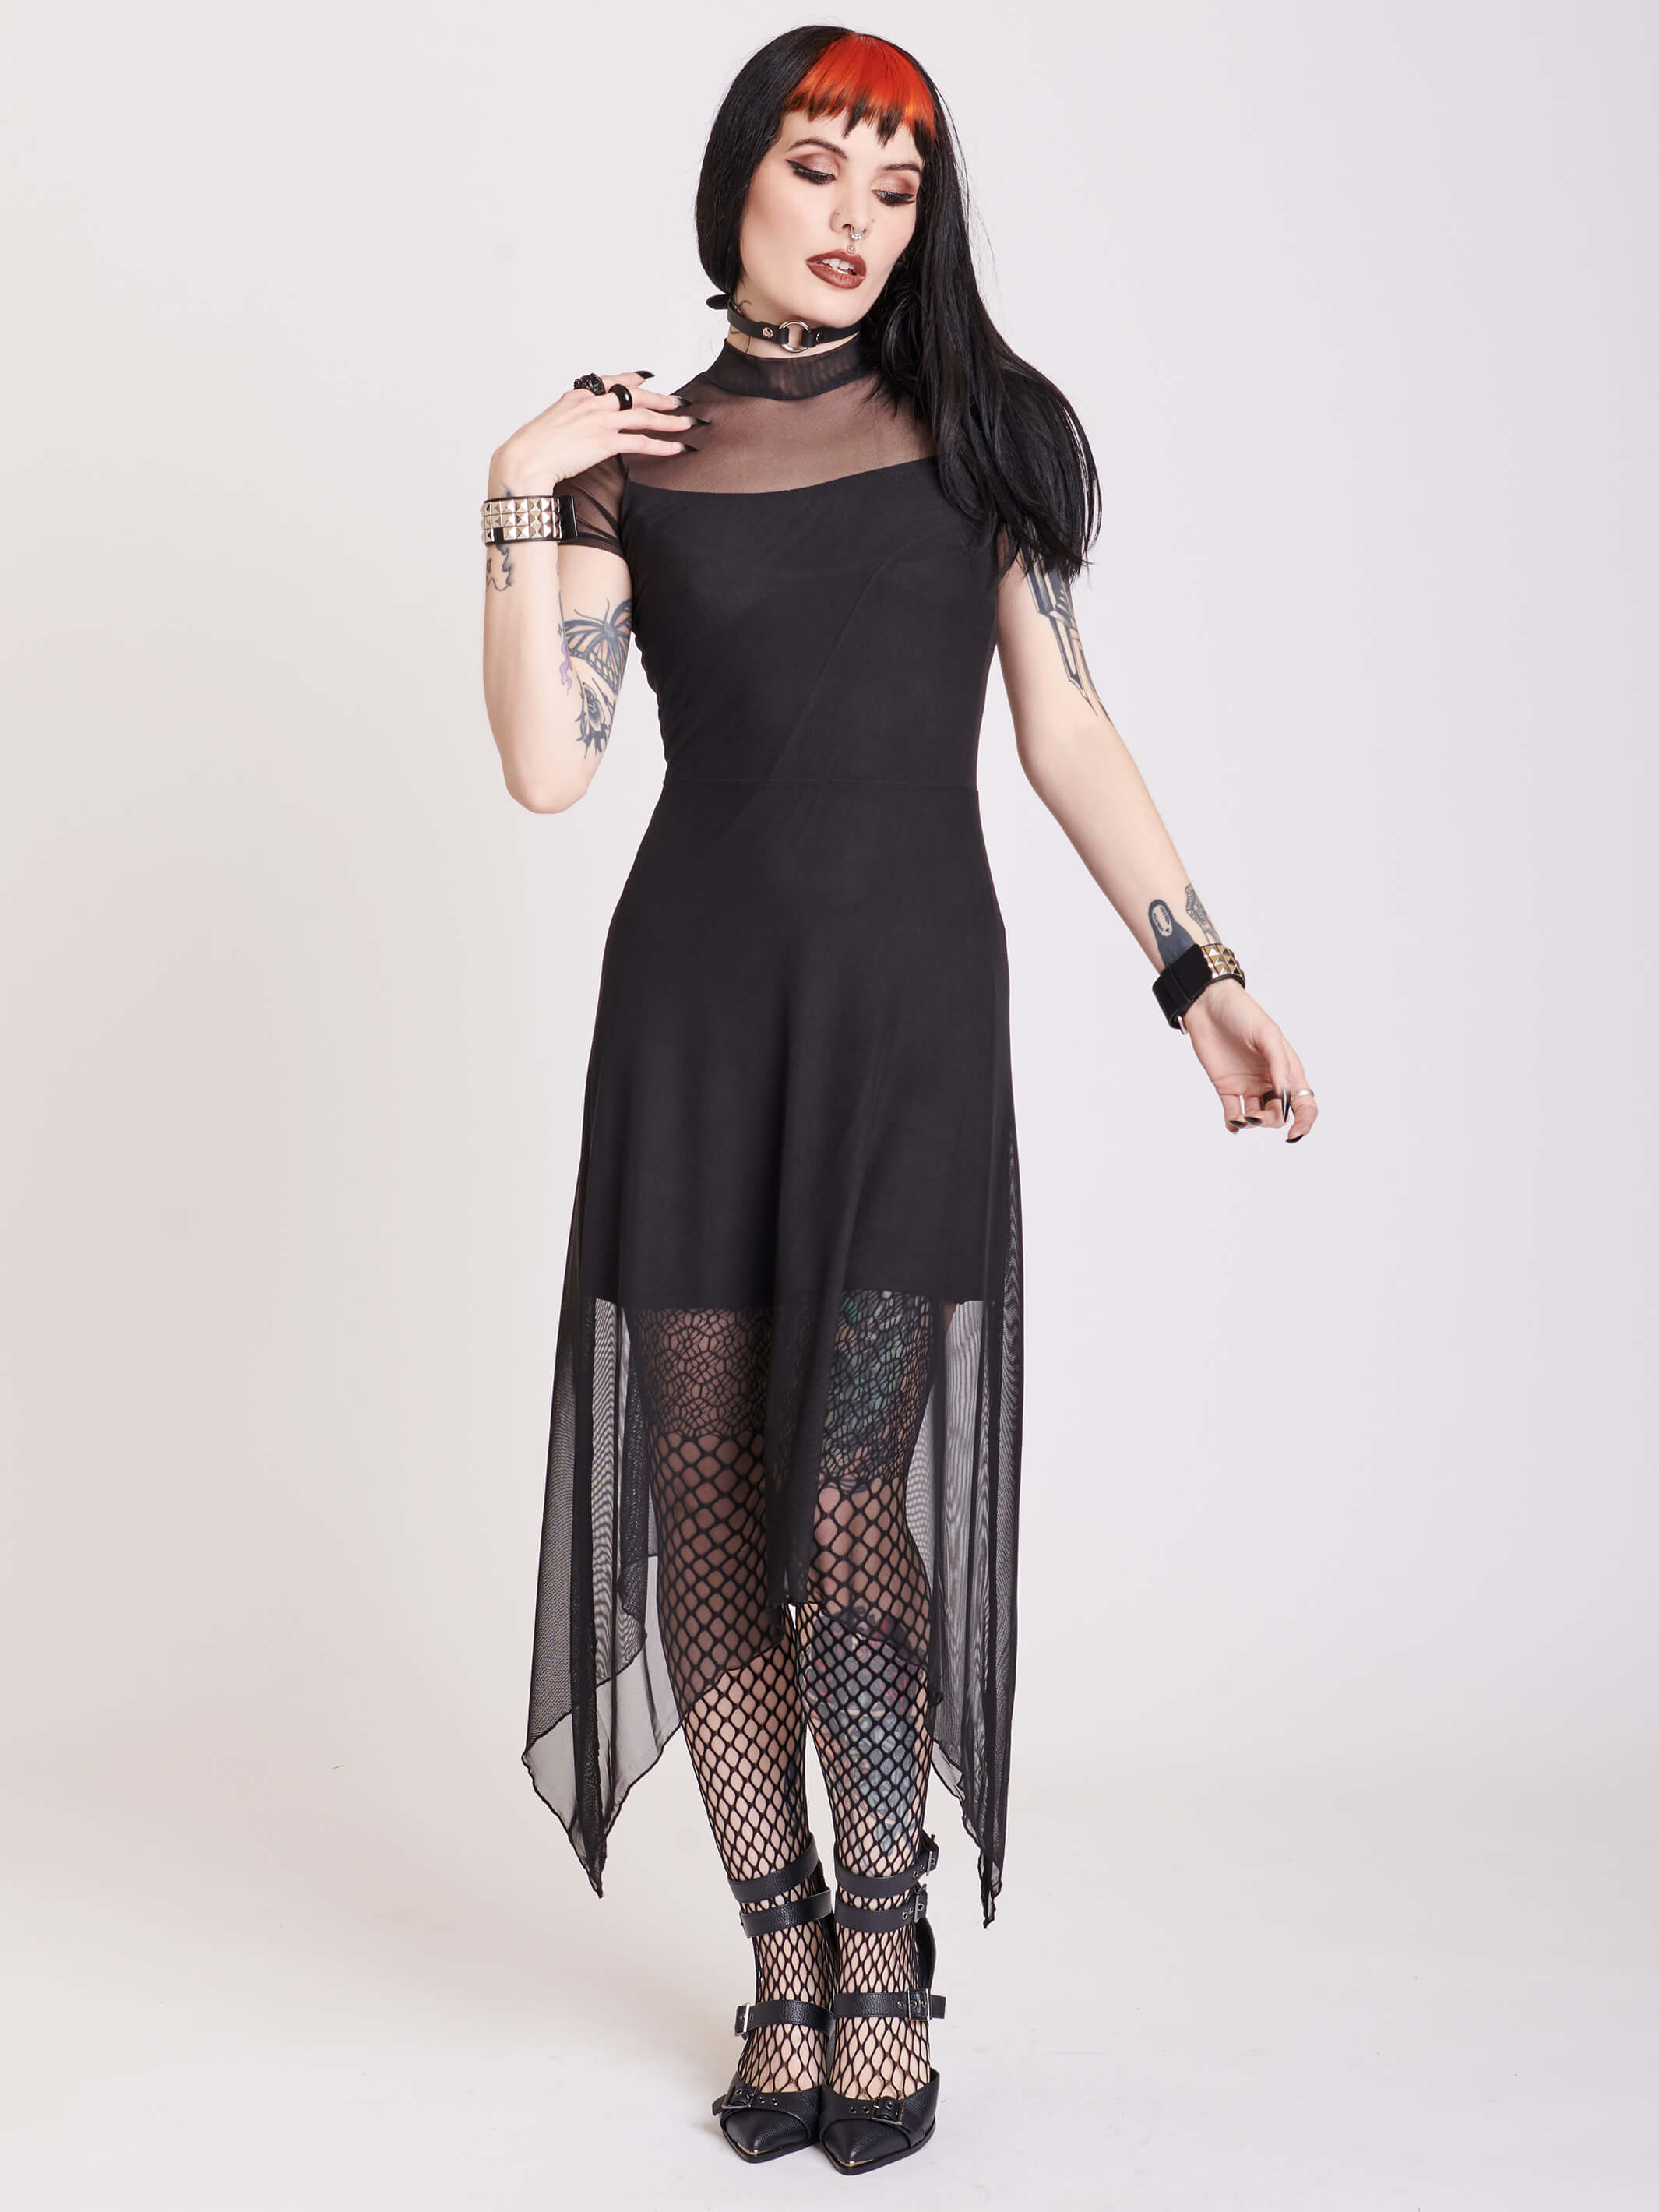 Goth Clothing & Alternative Apparel